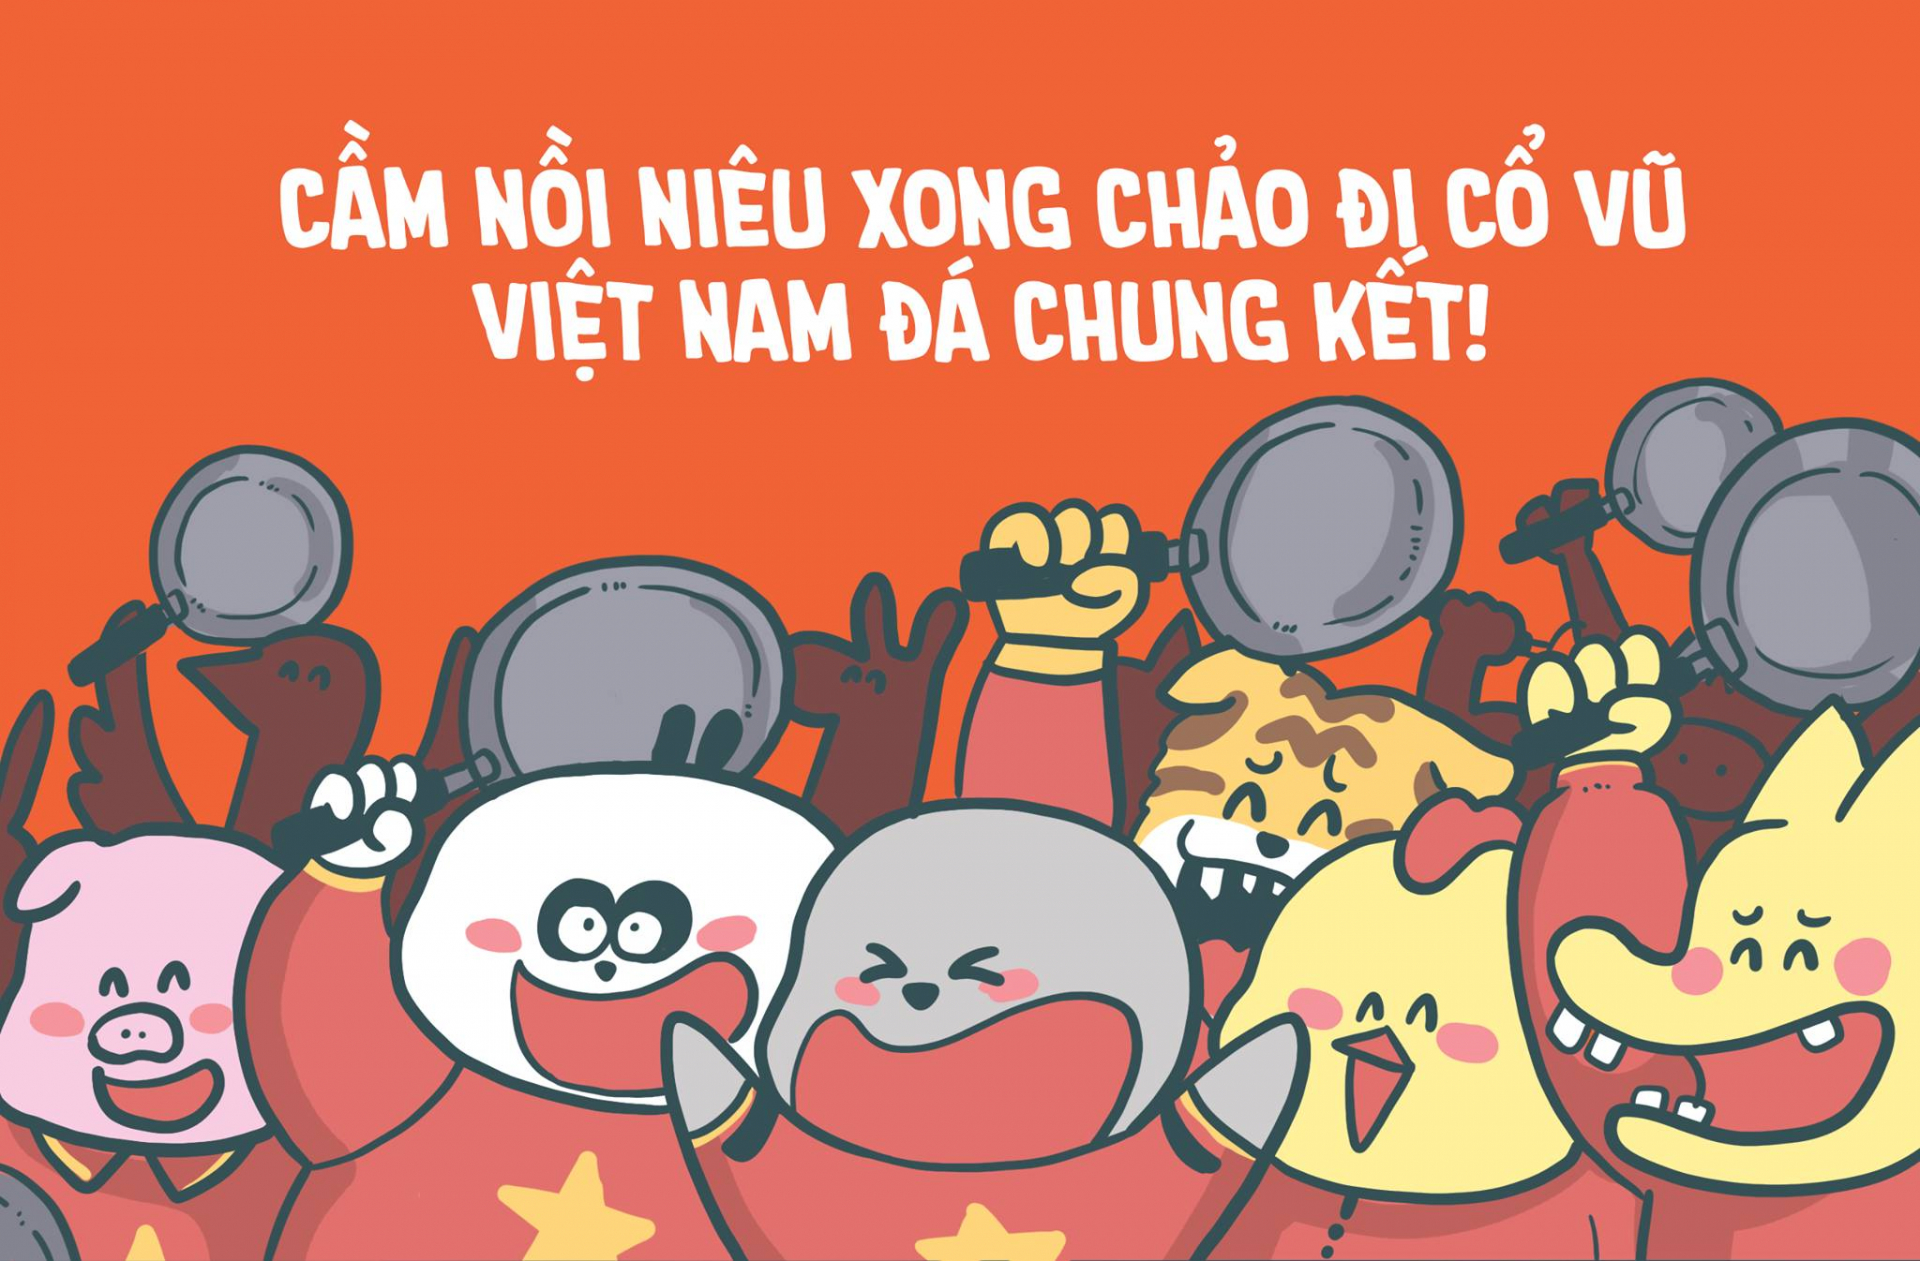 Trên Facebook đã có sự kiện 'Cầm chảo đi cổ vũ Việt Nam đá Chung kết' - Tranh: ThăngFly